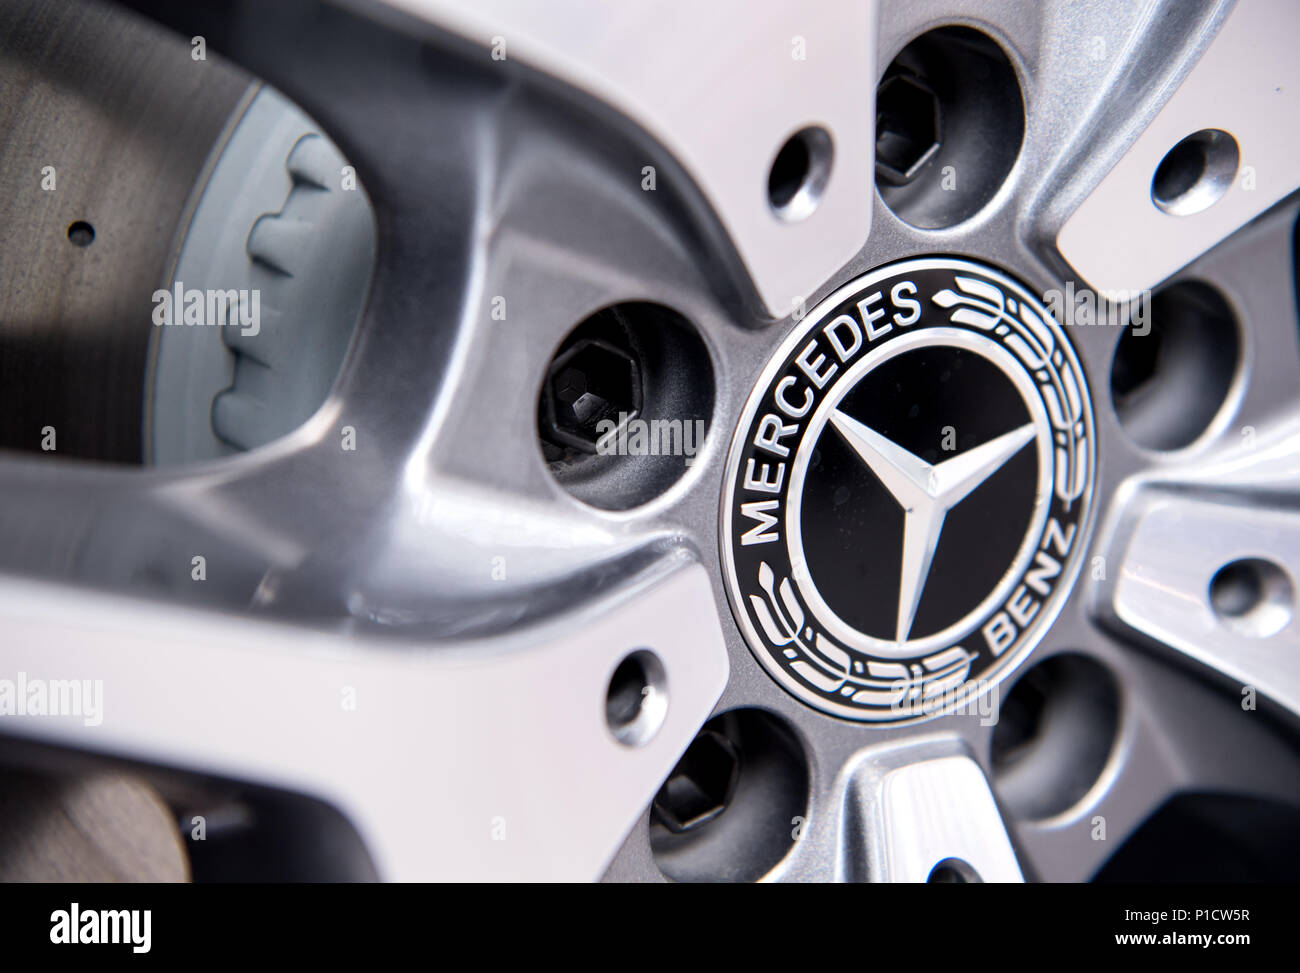 12 juin 2018, Allemagne, Munich : le logo Mercedes vu sur une jante. Le rappel obligatoire pour des centaines de milliers de véhicules diesel Daimler est un autre chapitre dans le scandale des gaz d'échappement. Maintenant, la suspicion s'est étendue aux modèles vendus fréquemment de Mercedes. Aussi le SUV sportif GLC 220d et un modèle de la classe C (C 220d) sont concernés. Photo : Sven Hoppe/dpa Banque D'Images